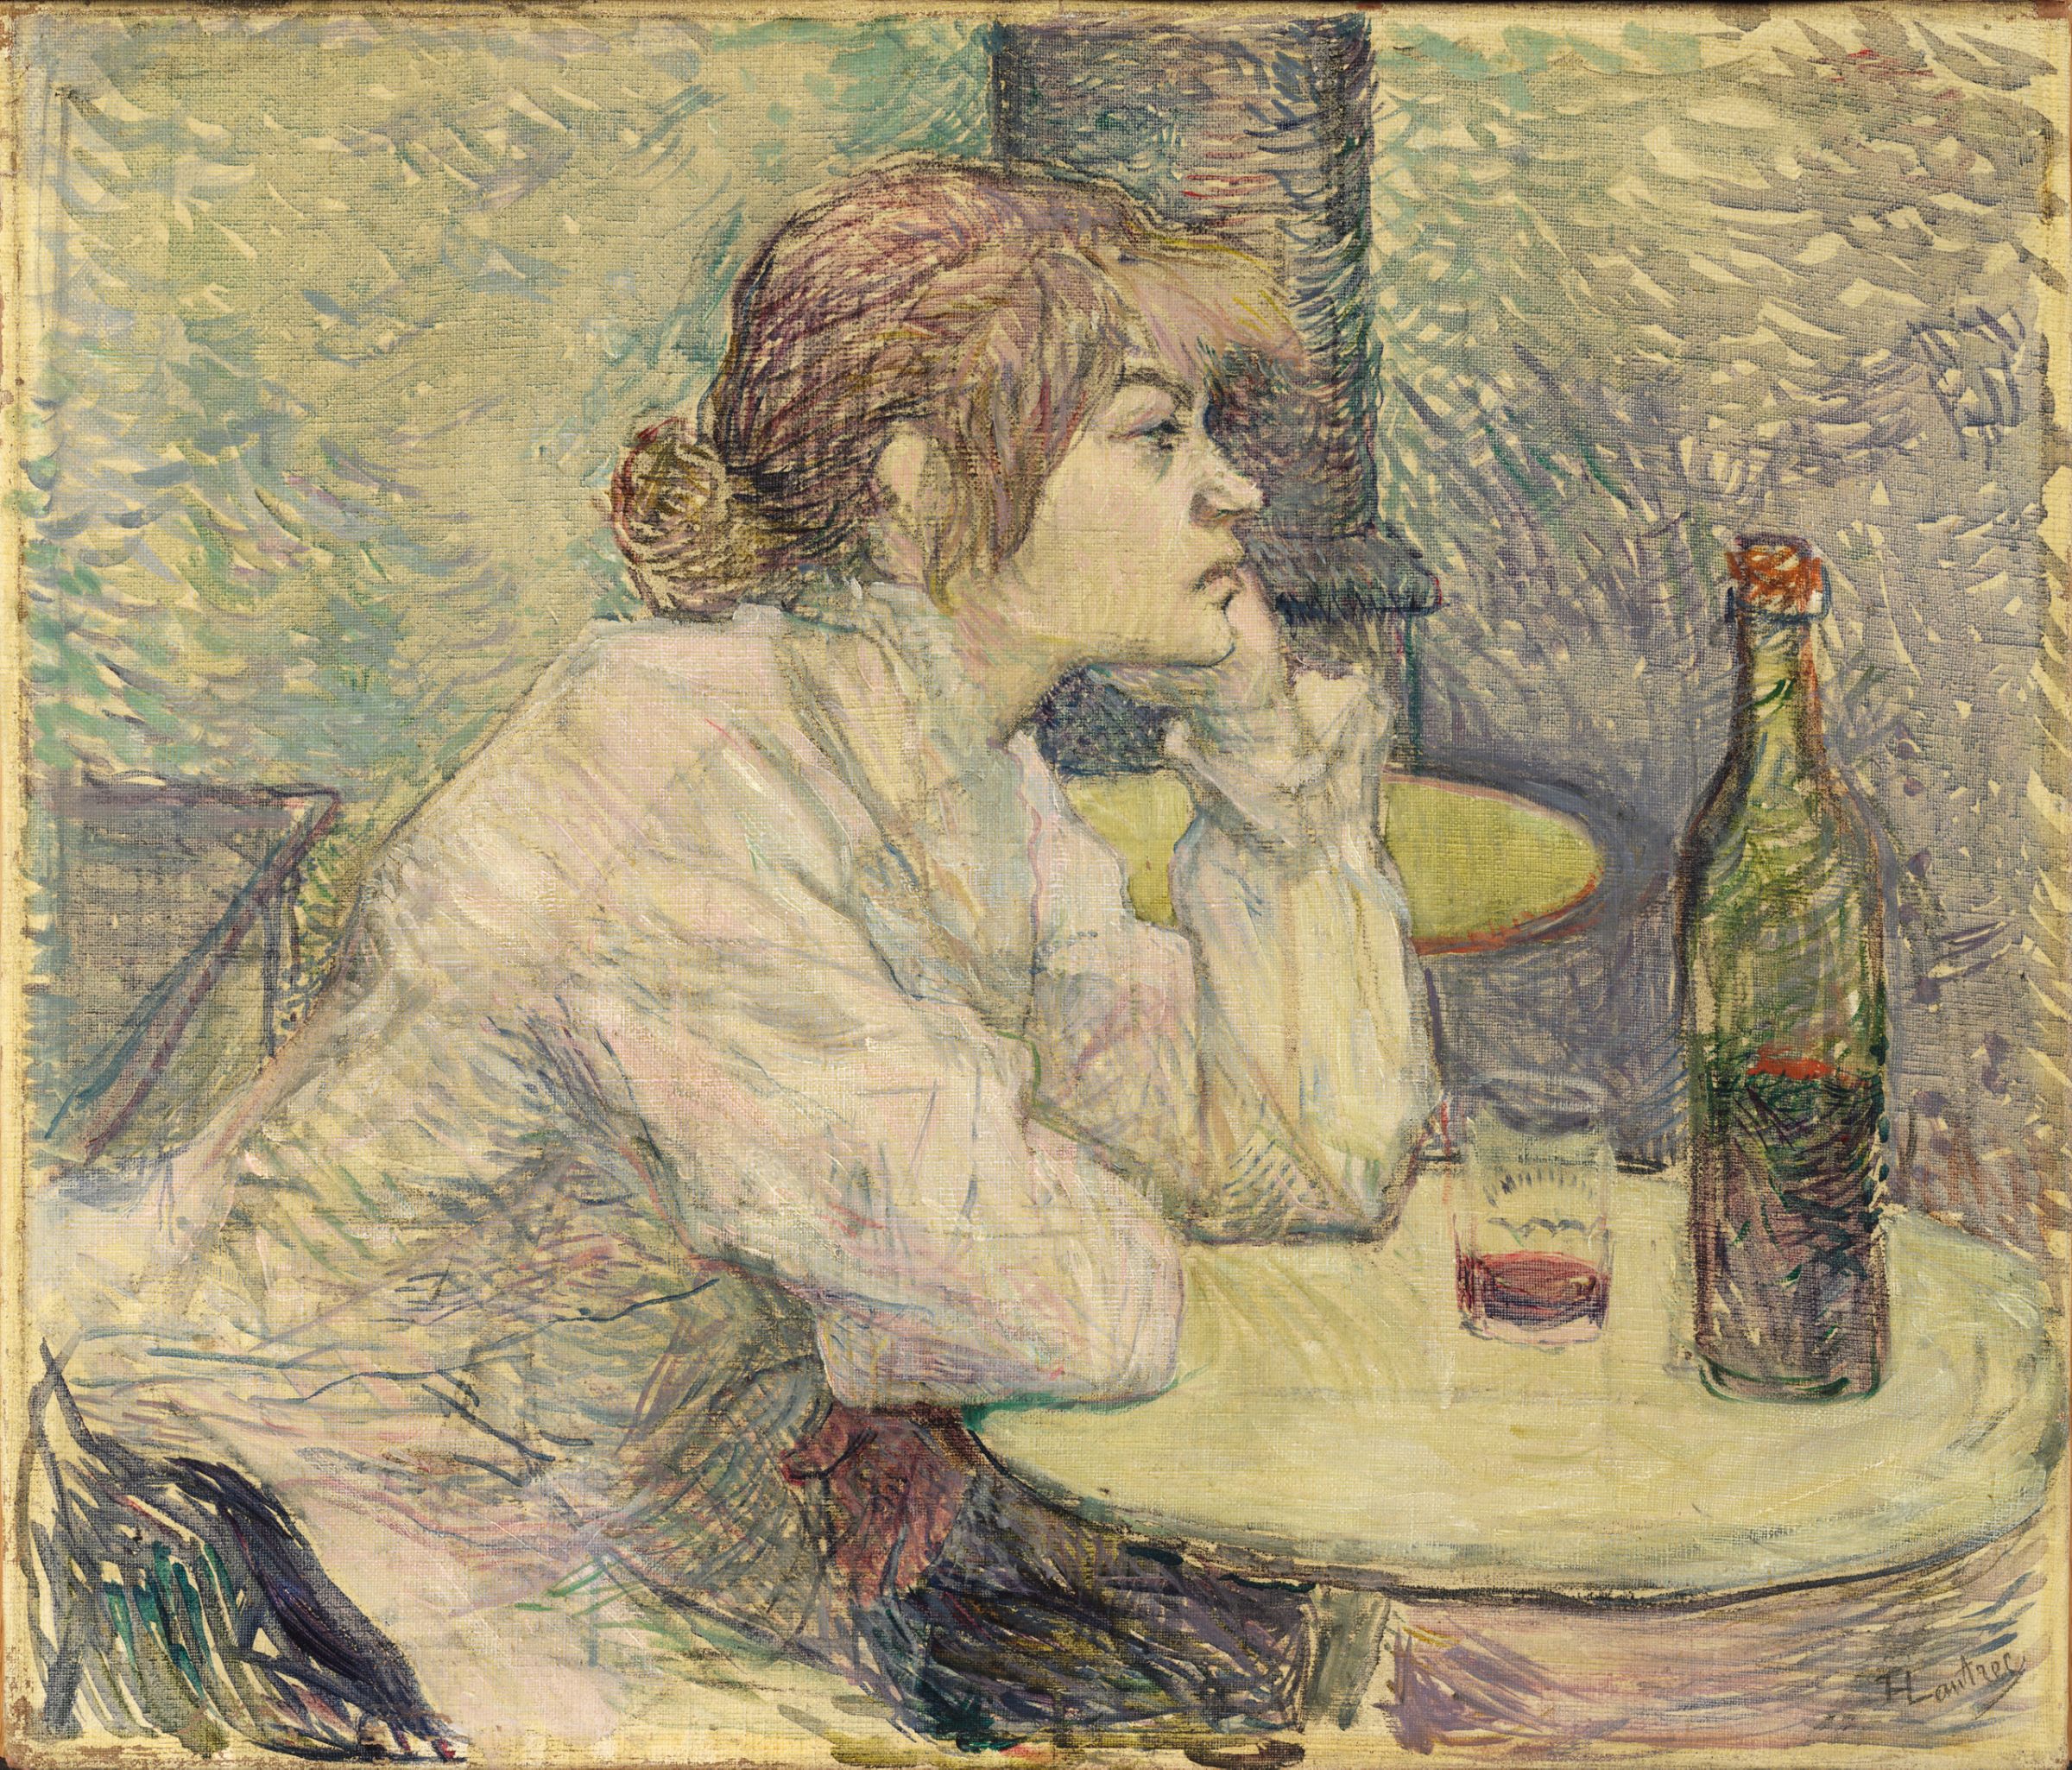 二日酔い（シュザンヌ・ヴァラドン） by Henri de Toulouse-Lautrec - 1887-89年 - 55.3 x 47 cm 